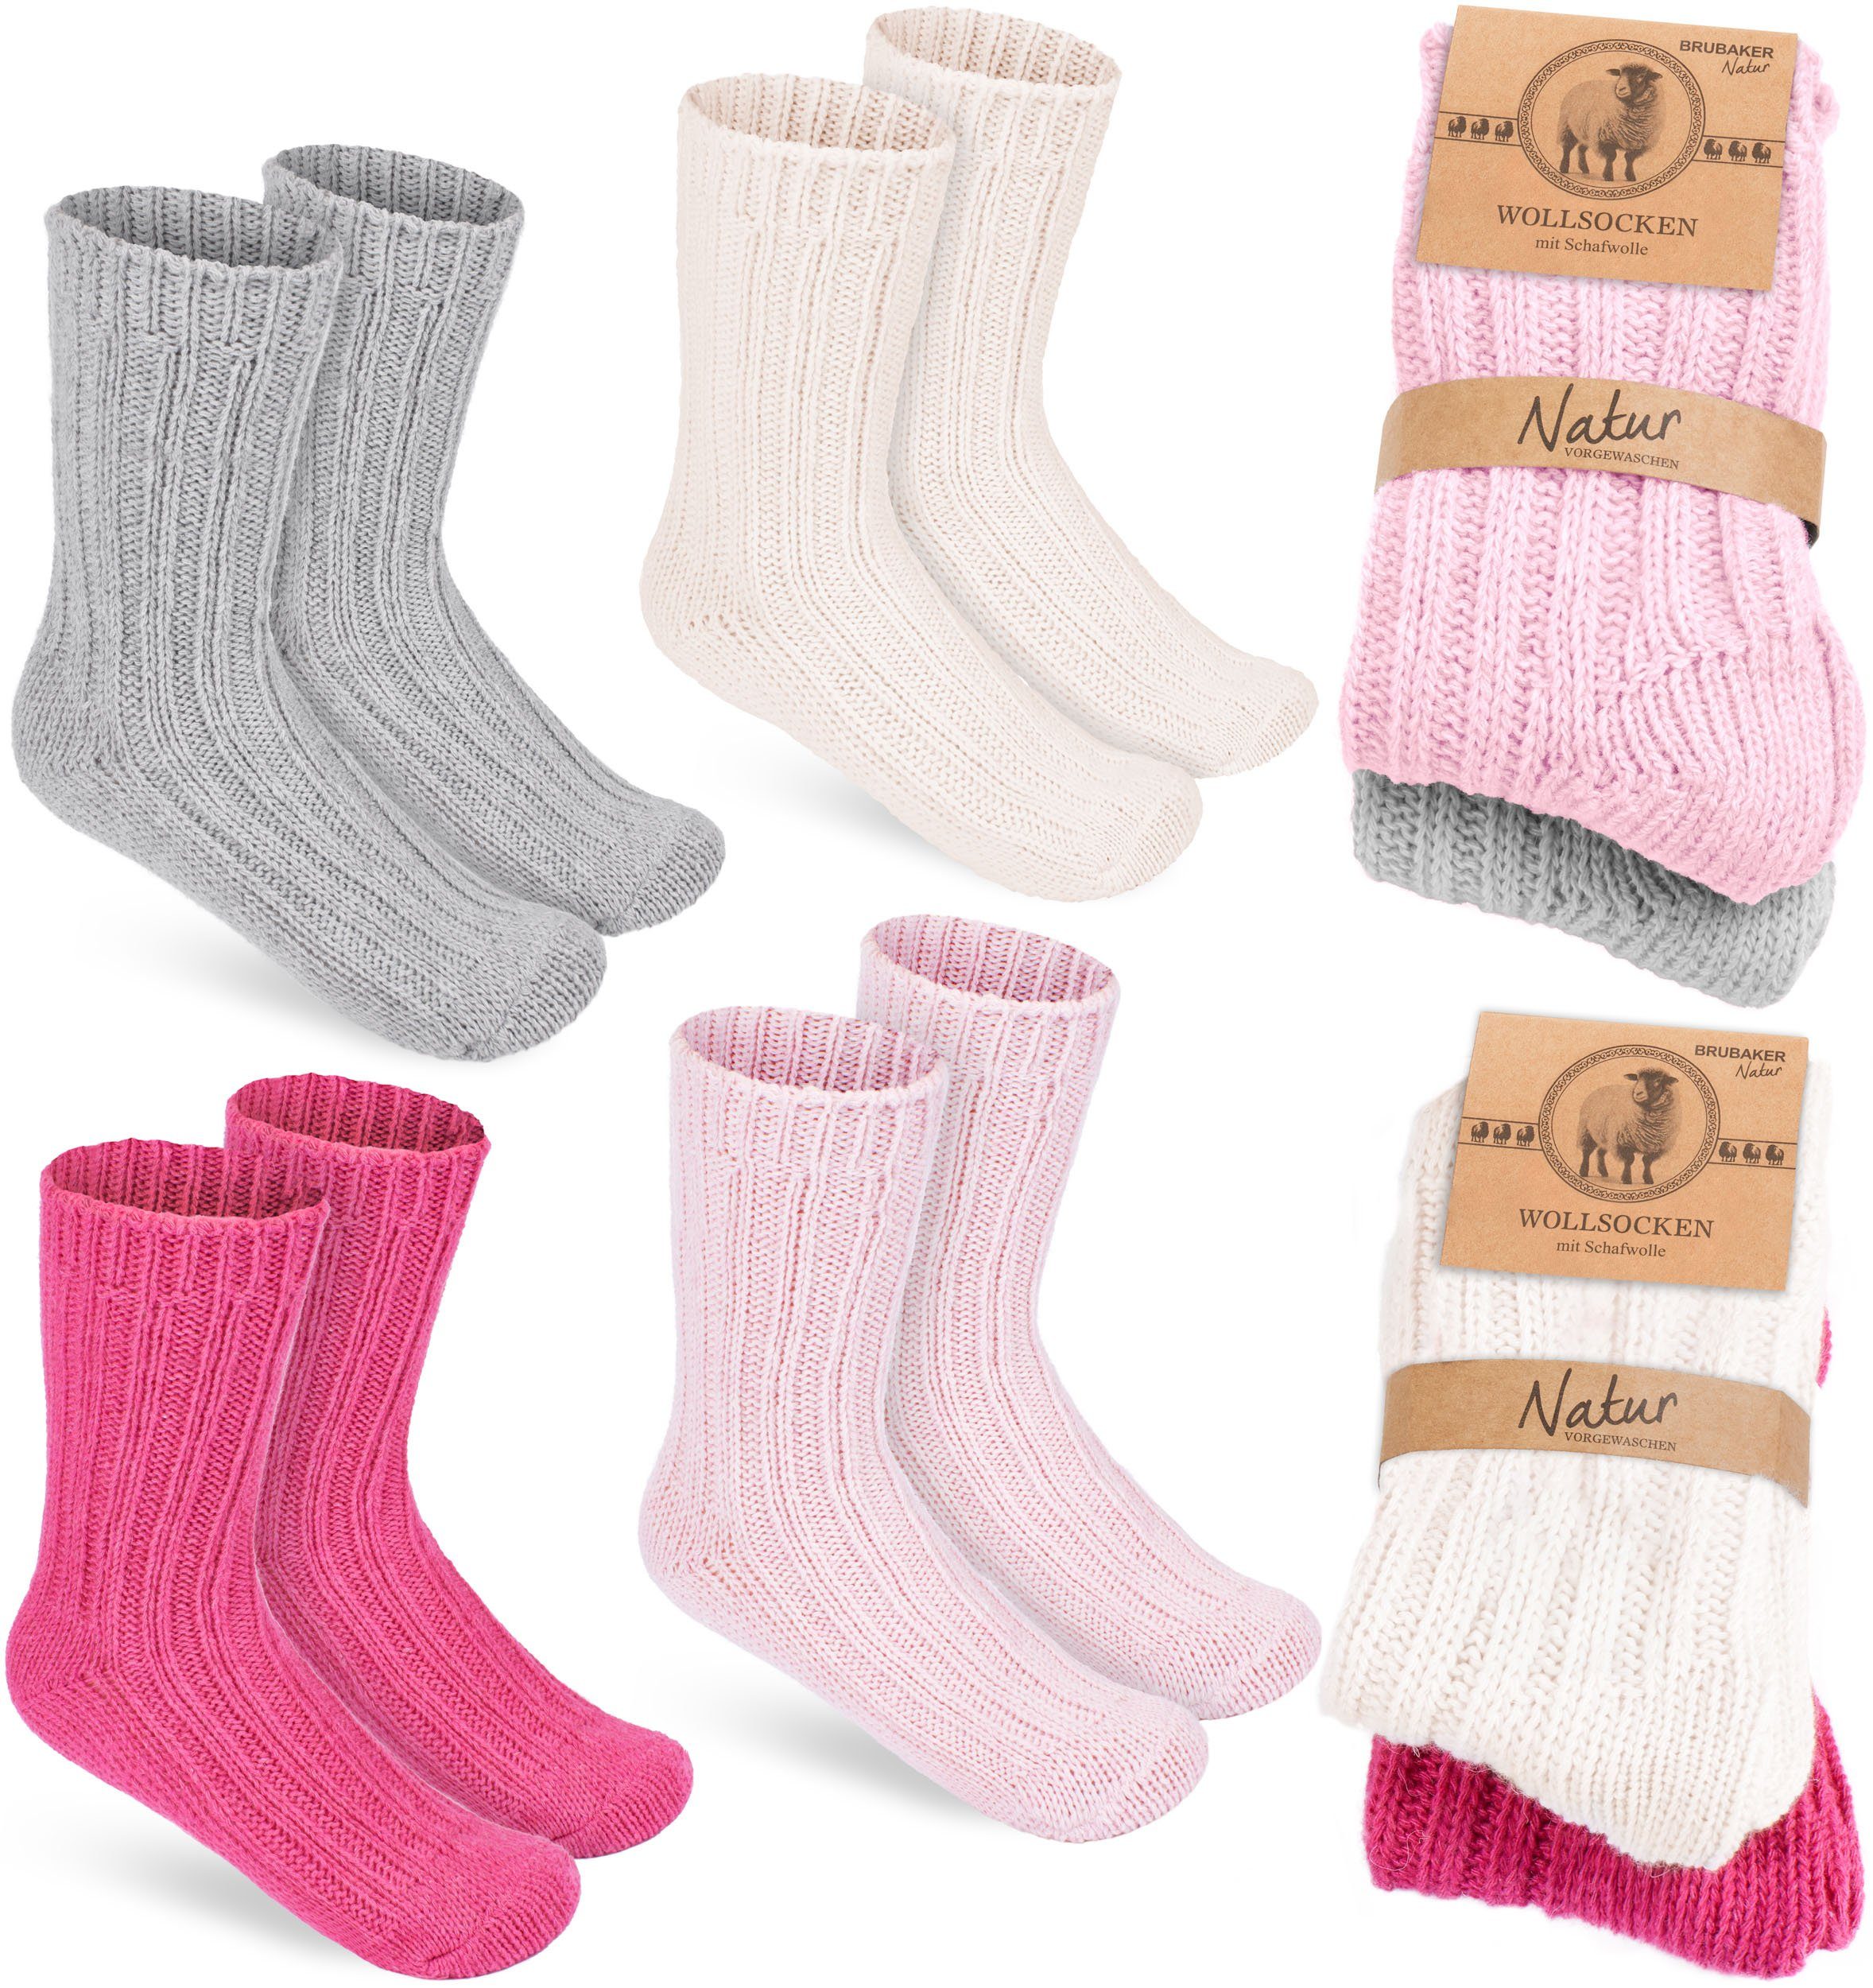 BRUBAKER Socken Kinder Wollsocken - Warme Wintersocken für Jungen und Mädchen (4-Paar, 4er-Pack) Flauschiges Socken Set mit Schafwolle - Winter Kindersocken Rosa, Beige, Grau und Pink